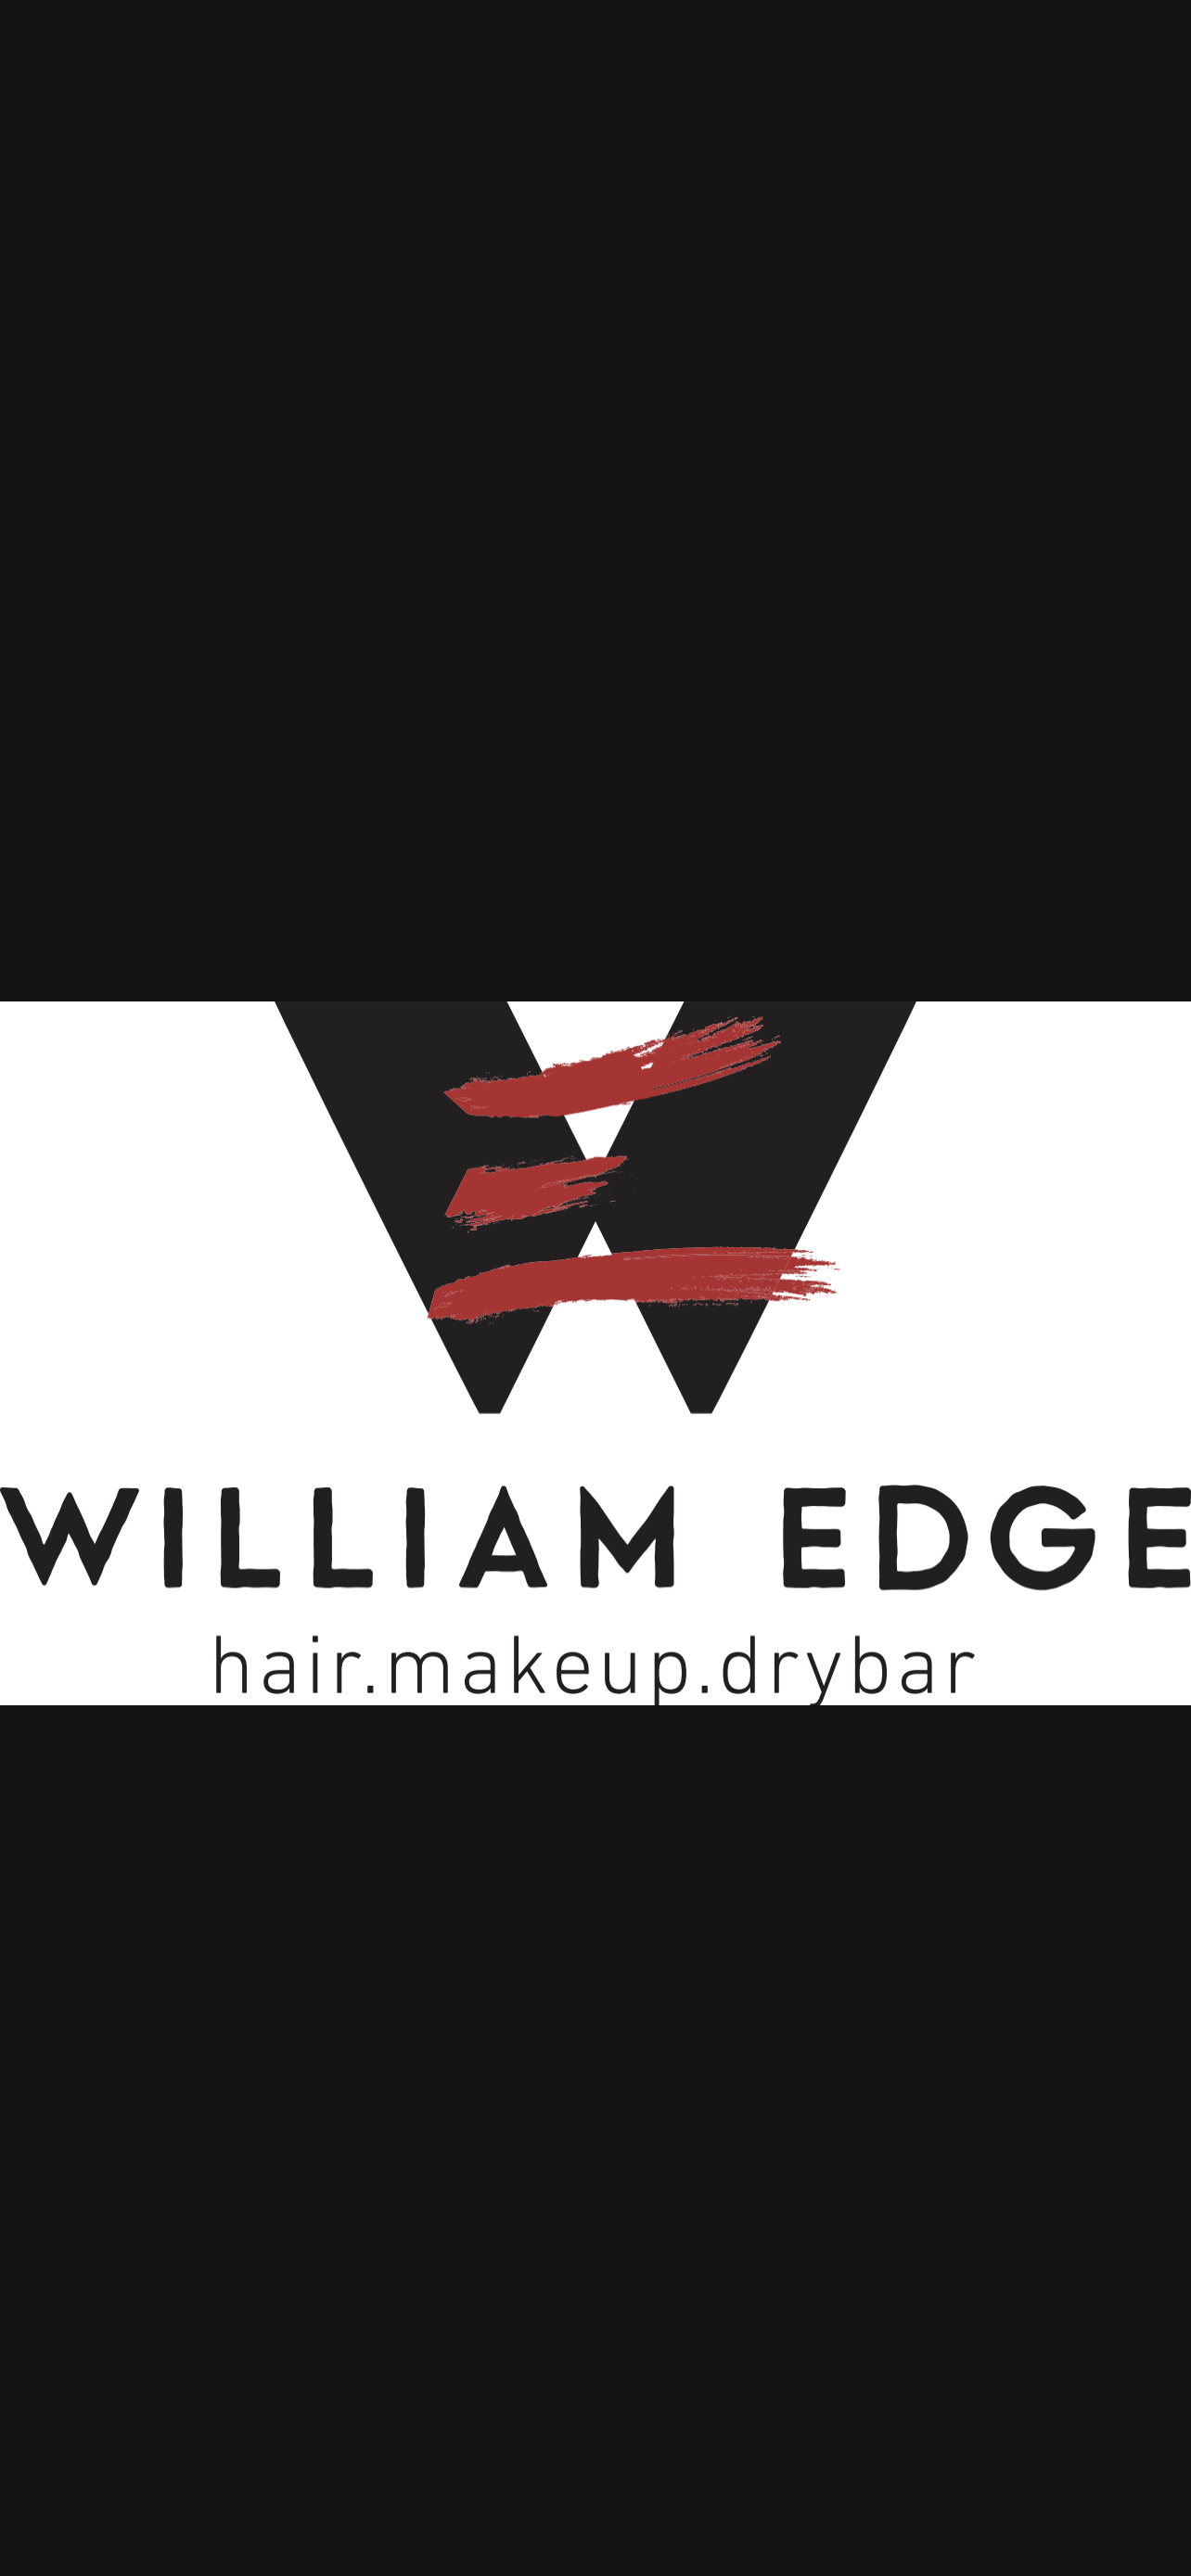 William Edge Salon